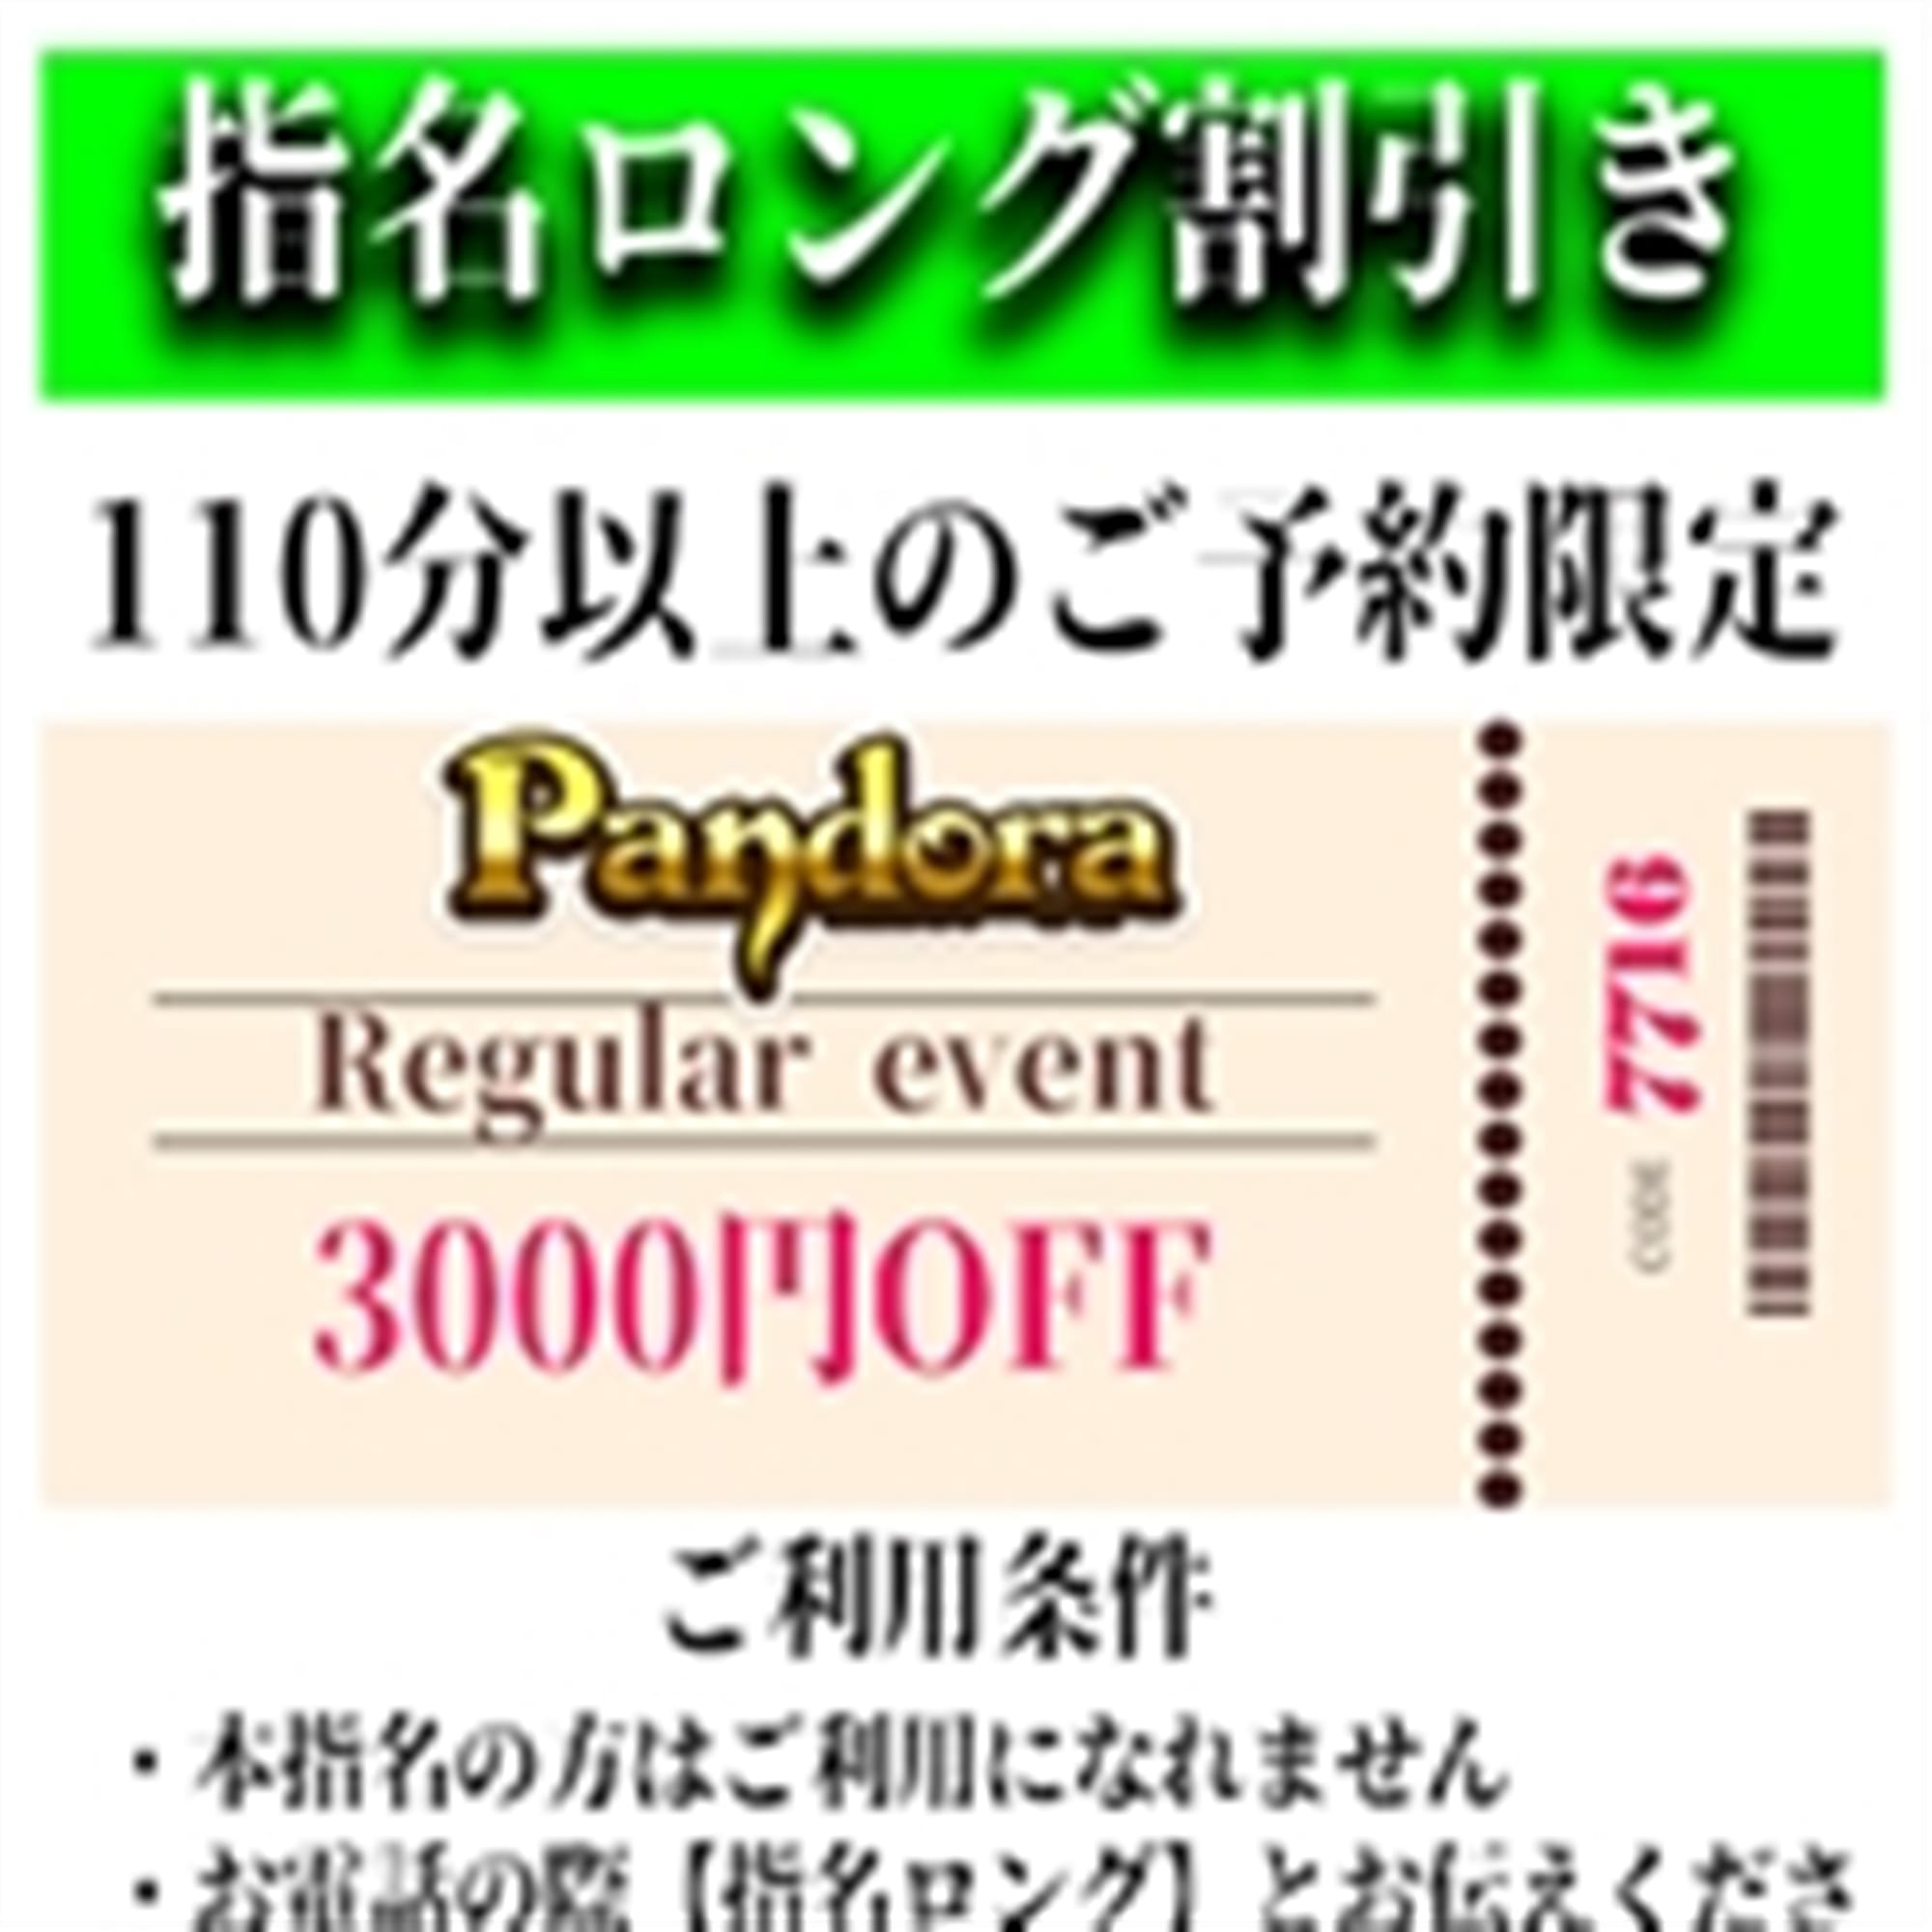 「ご指名のお客様も遊べるロングコース割引」04/25(木) 12:49 | Pandora(パンドラ)新潟のお得なニュース